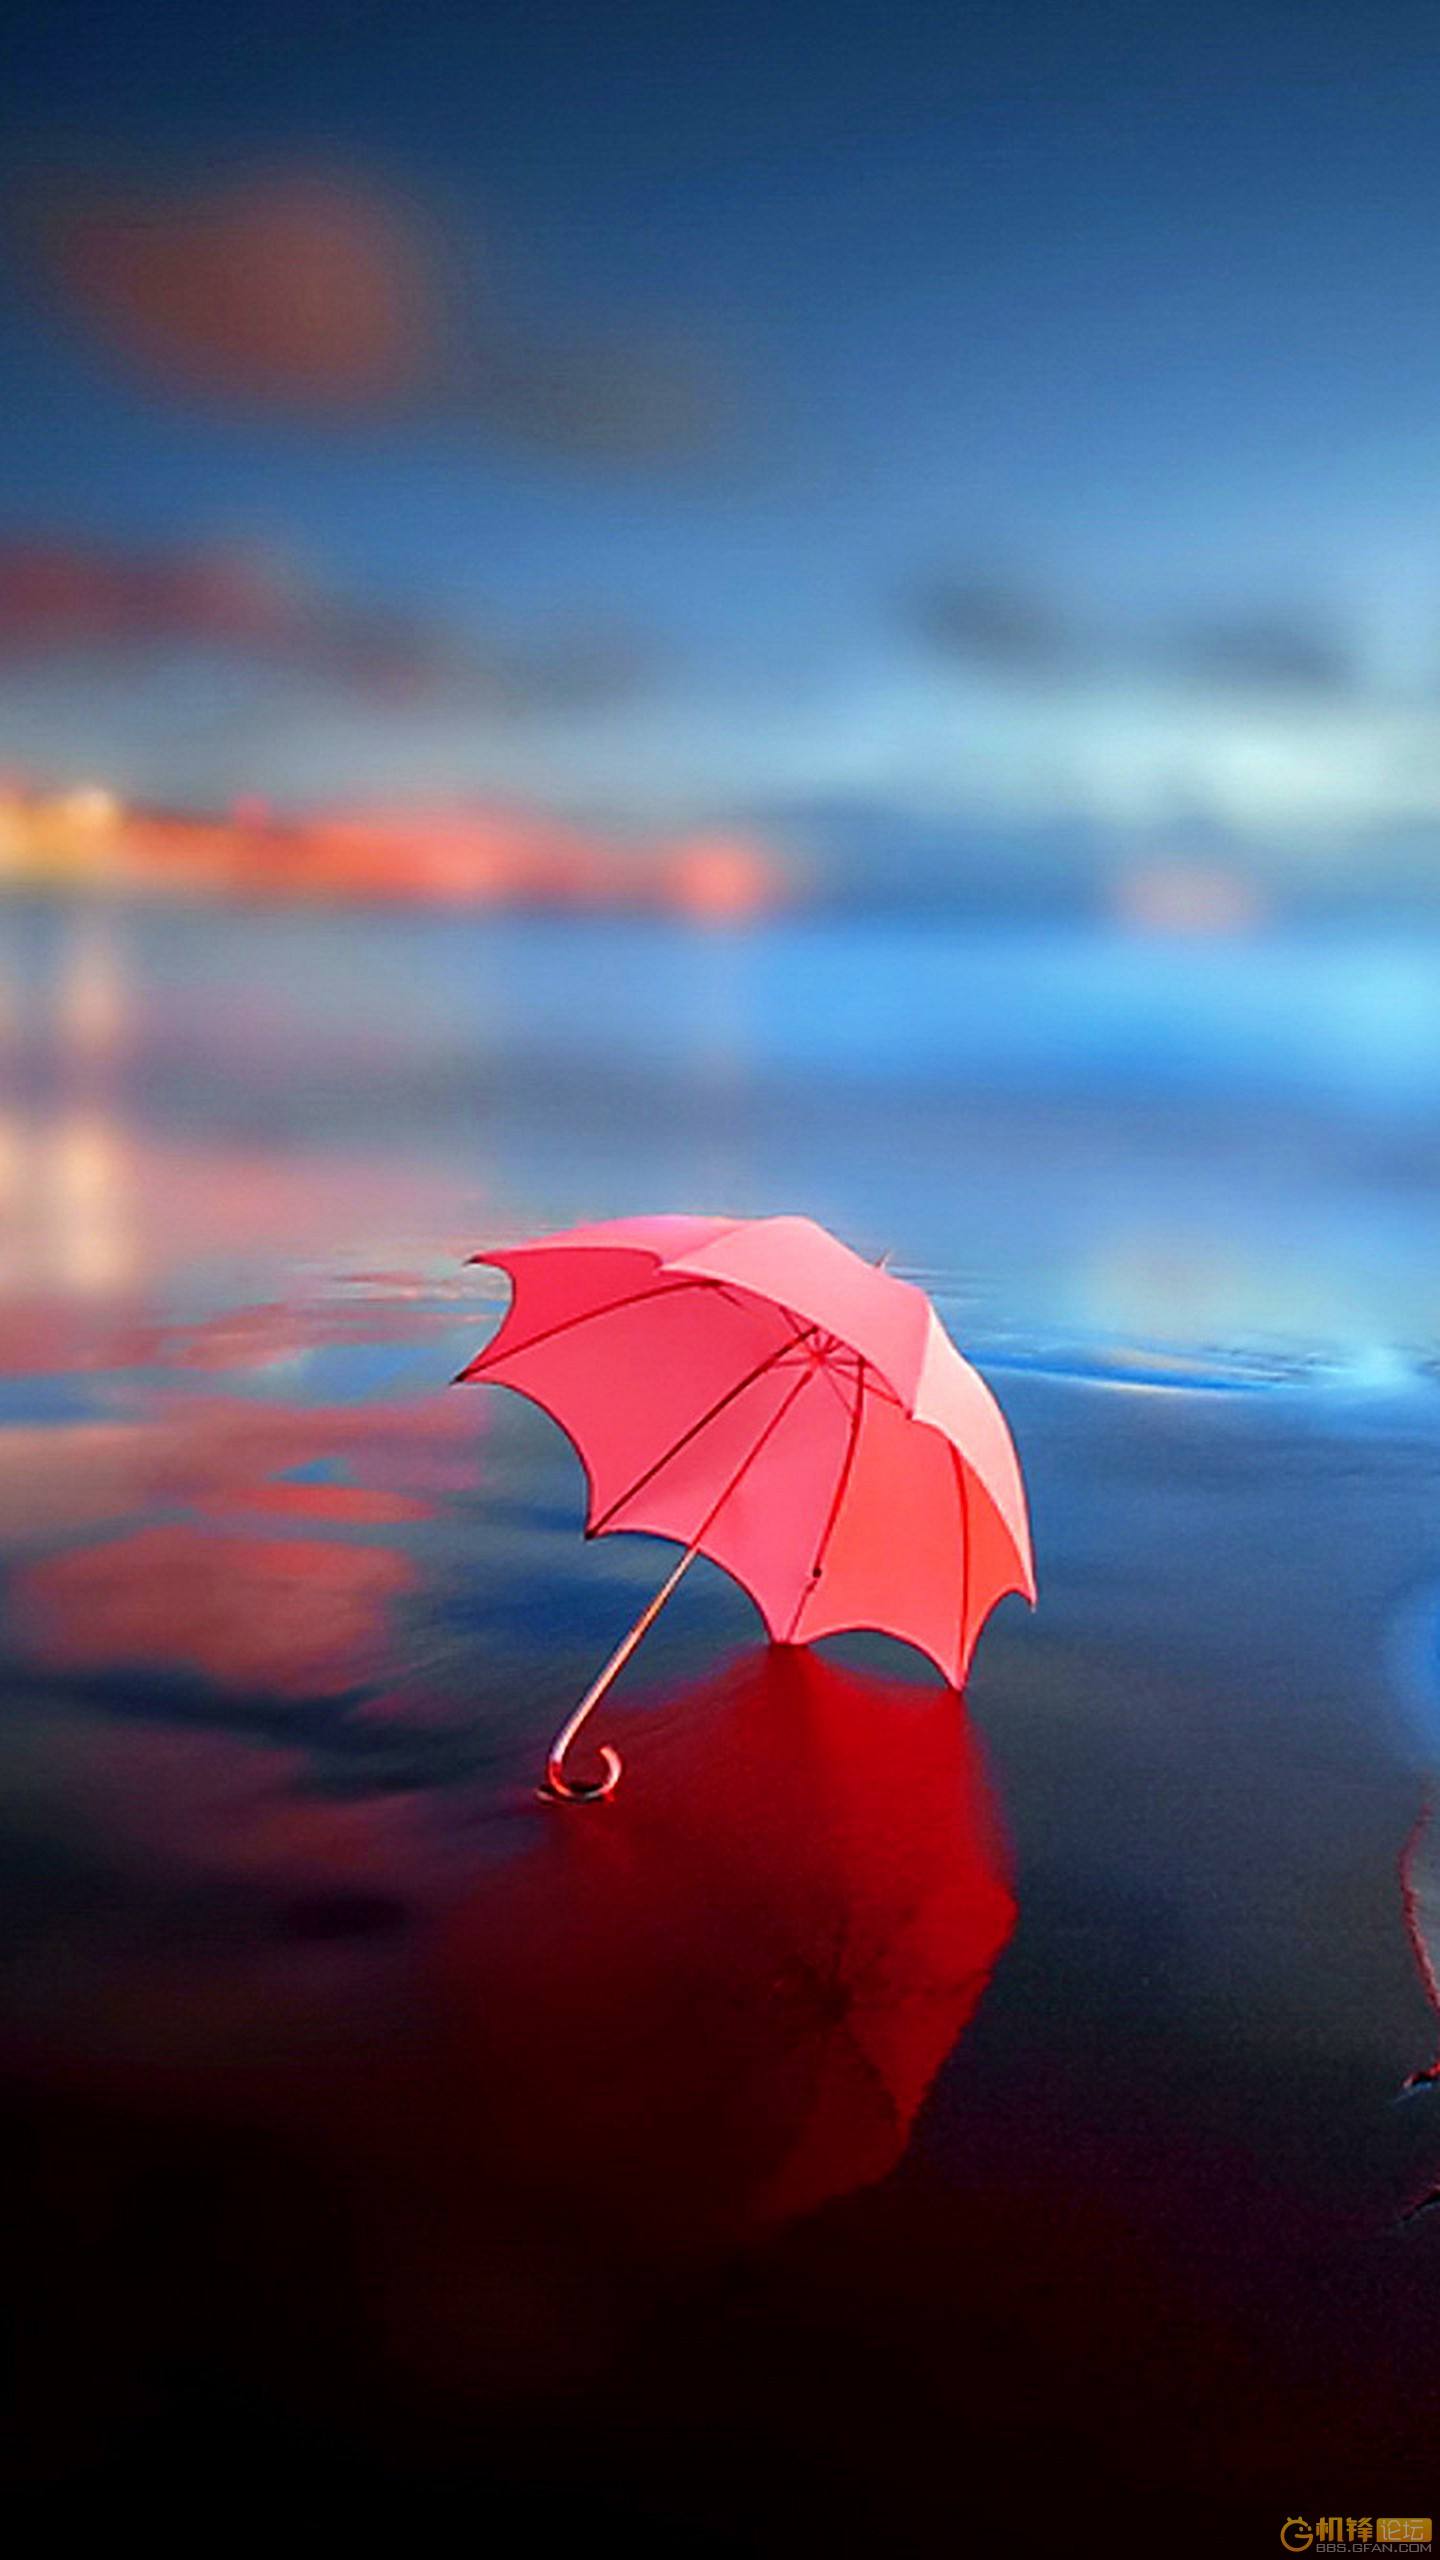 一把放置在地上的小红伞唯美插画手机壁纸